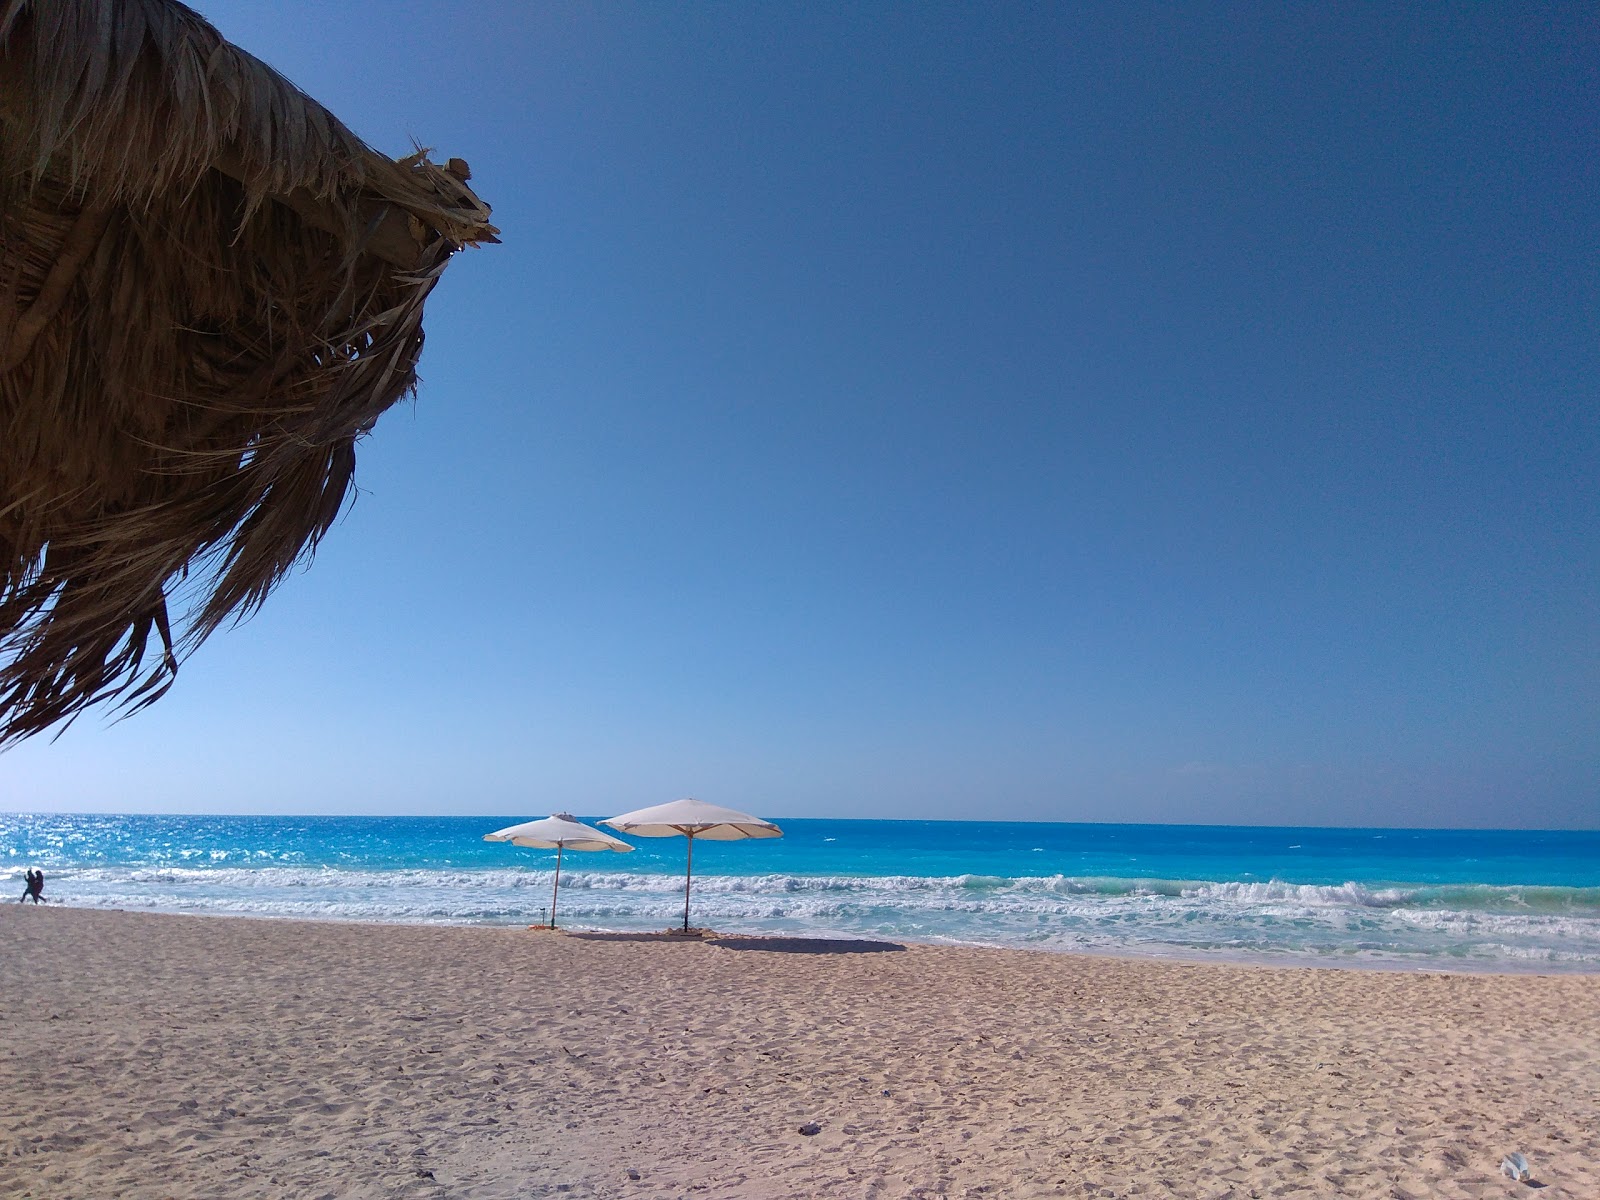 Photo de Horus Beach - endroit populaire parmi les connaisseurs de la détente